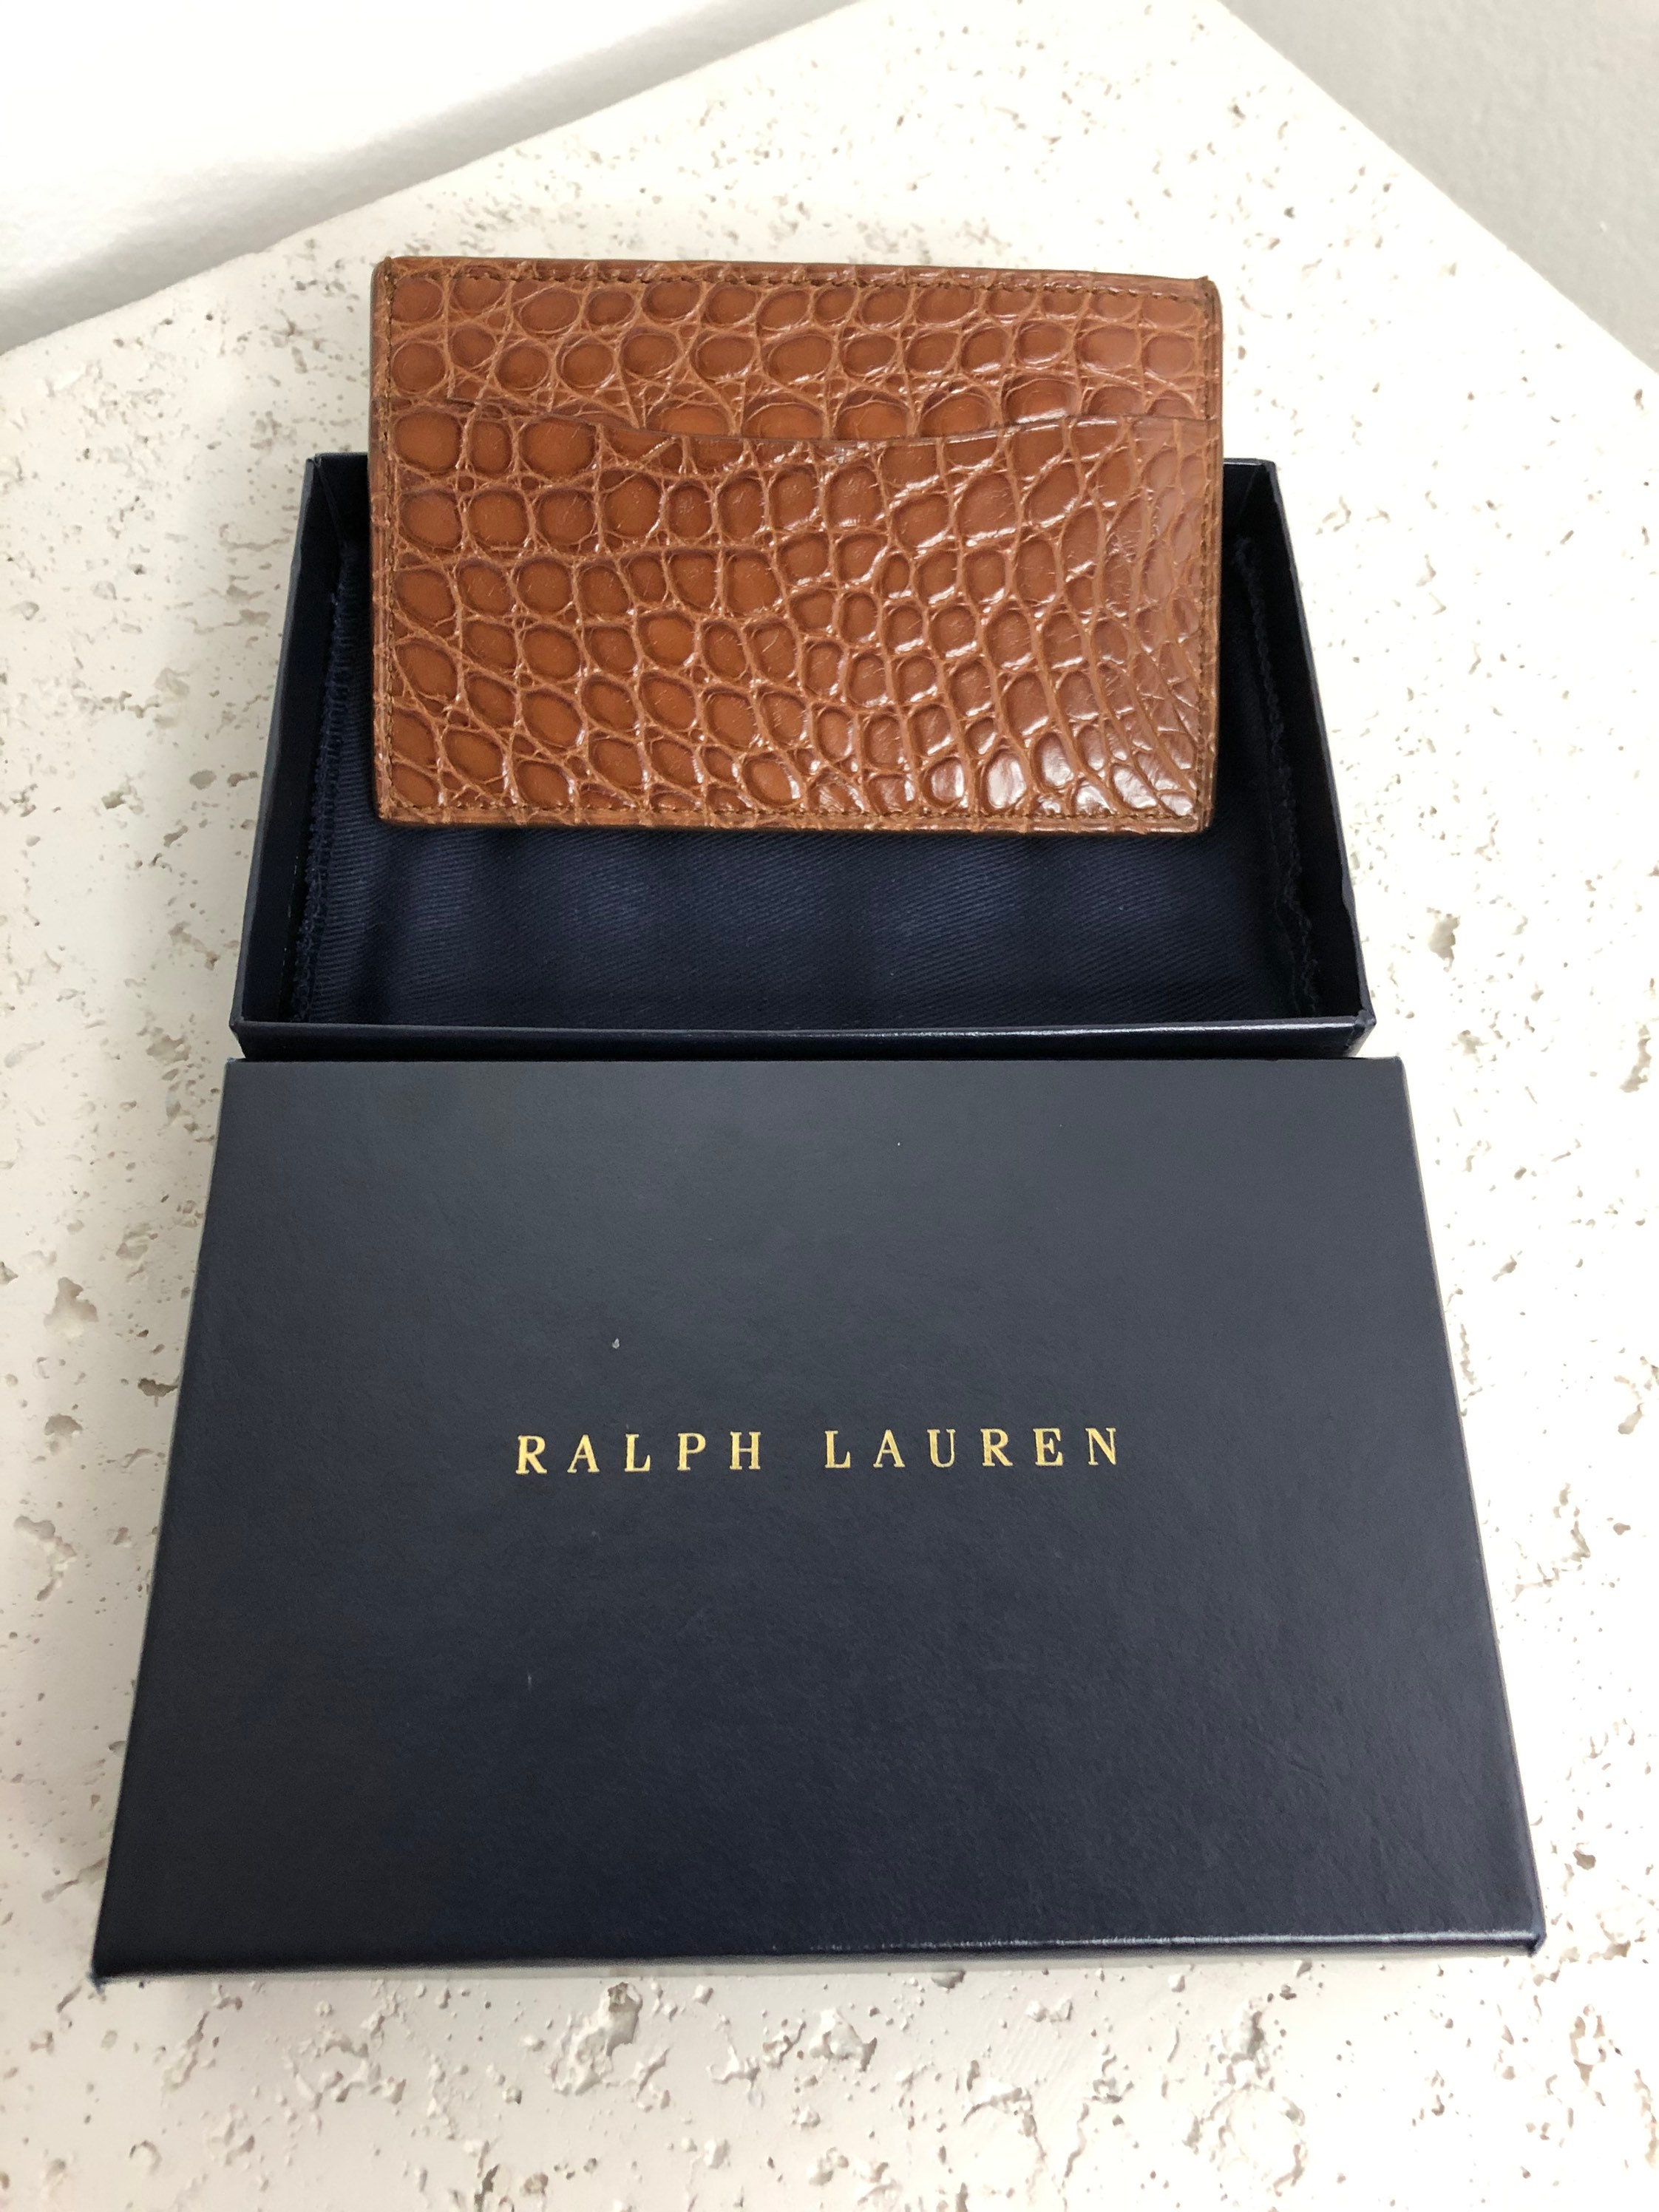 Ralph Lauren card wallet | Etsy